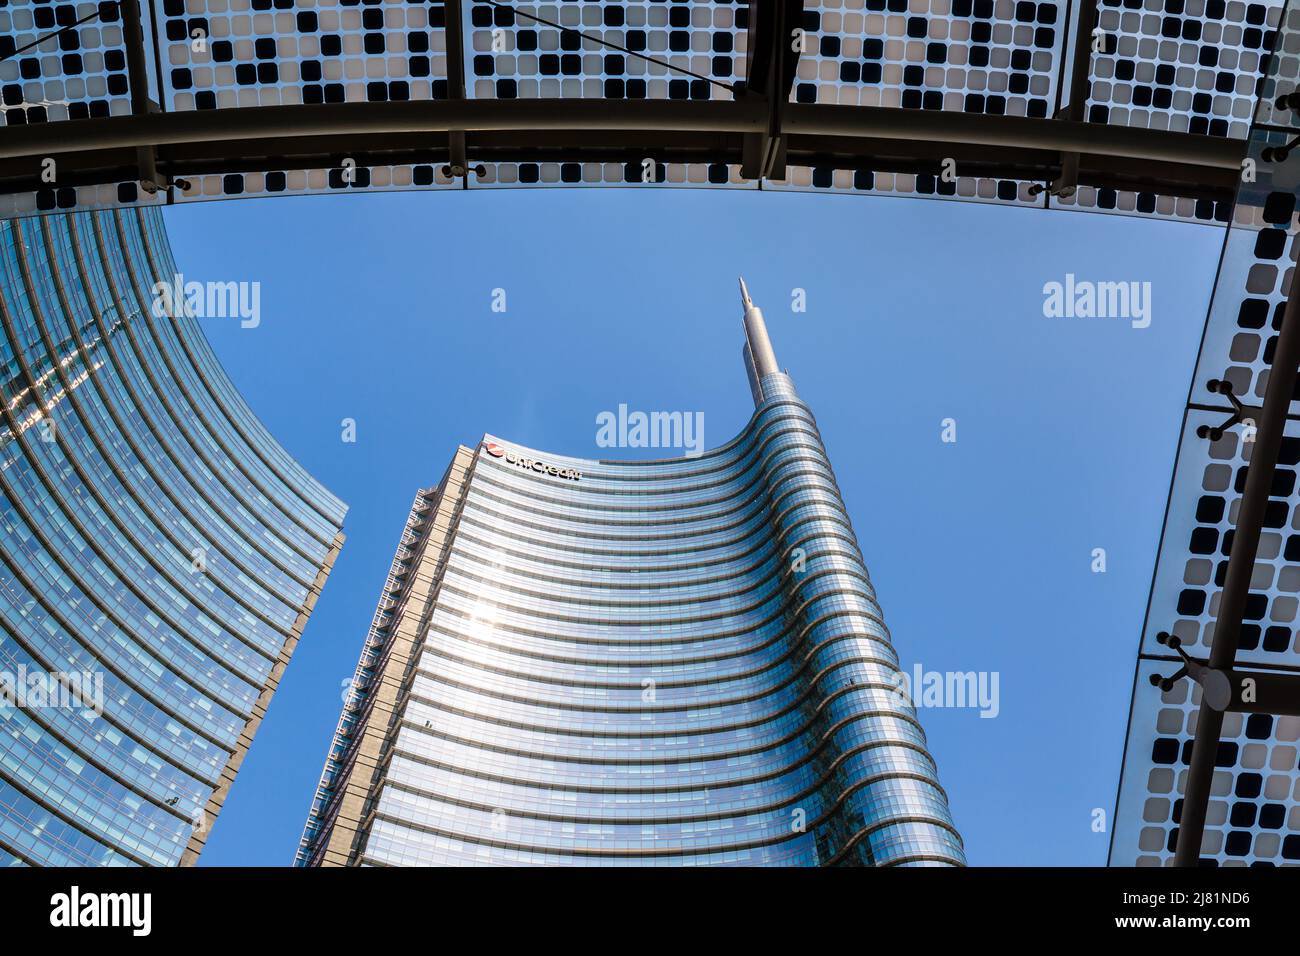 Vista en ángulo bajo de la torre UniCredit, sede del banco UniCredit en el distrito de Porta Nuova en Milán, Italia. Foto de stock